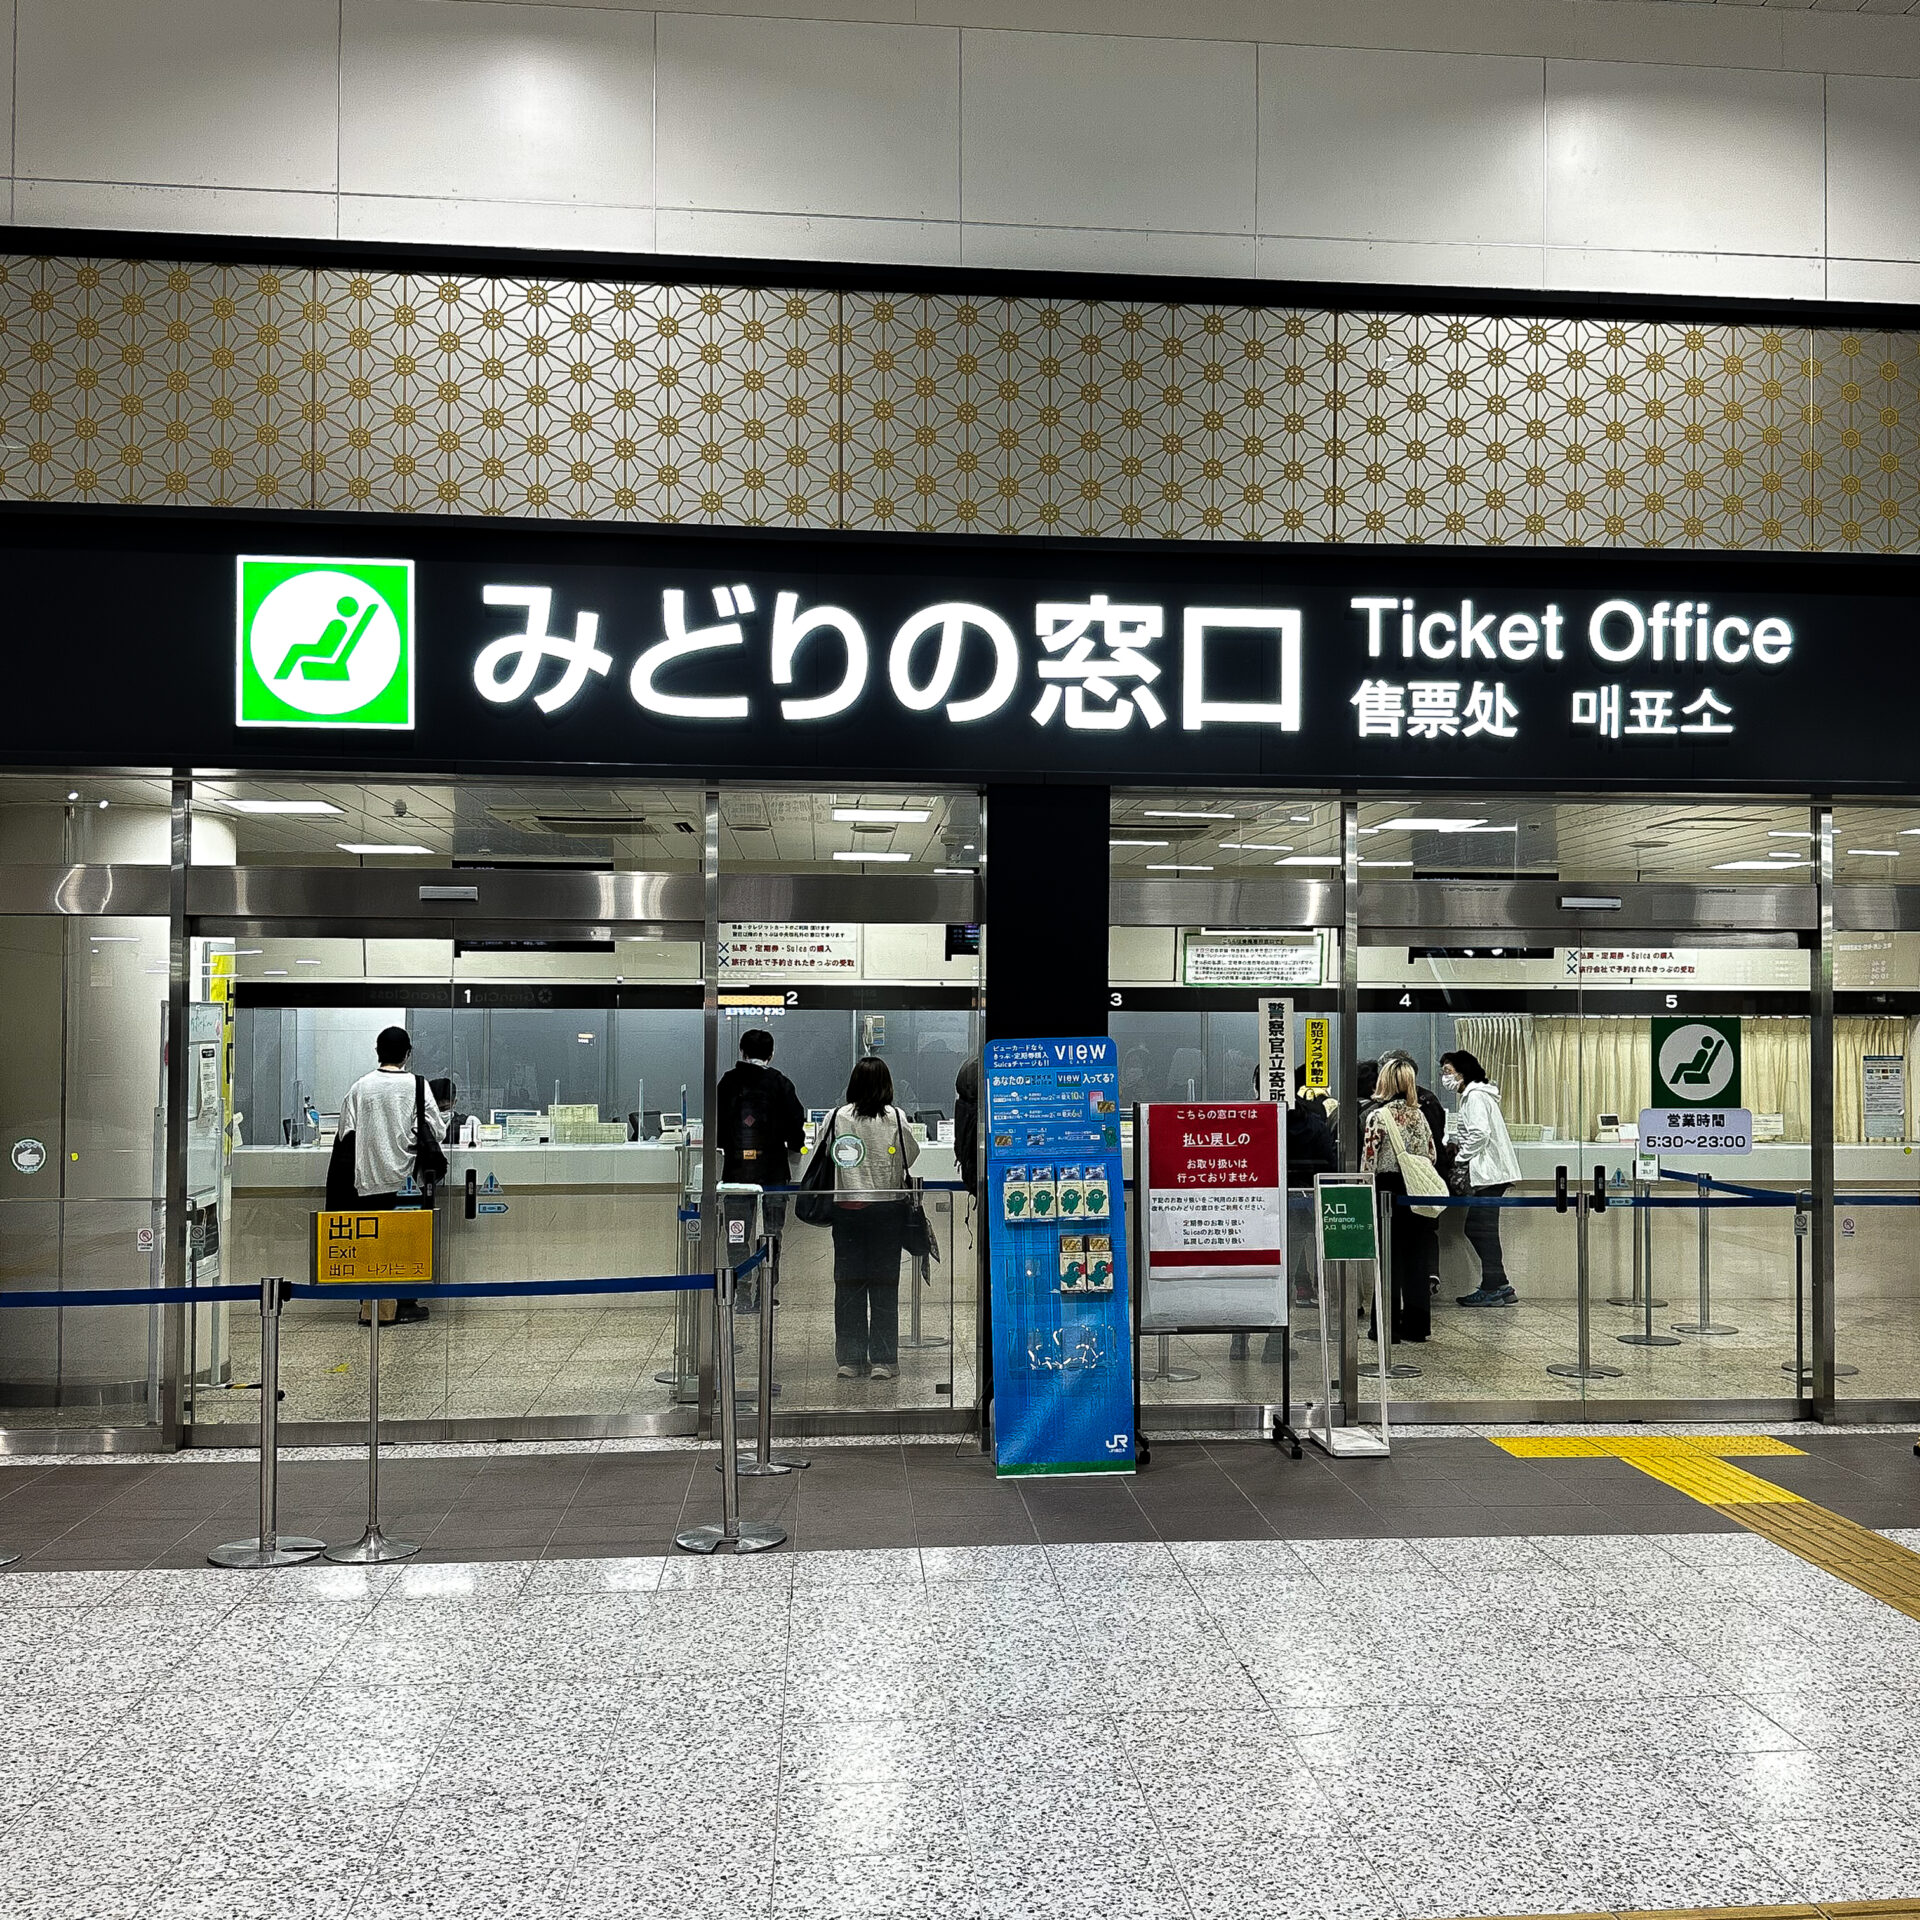 上野駅みどりの窓口